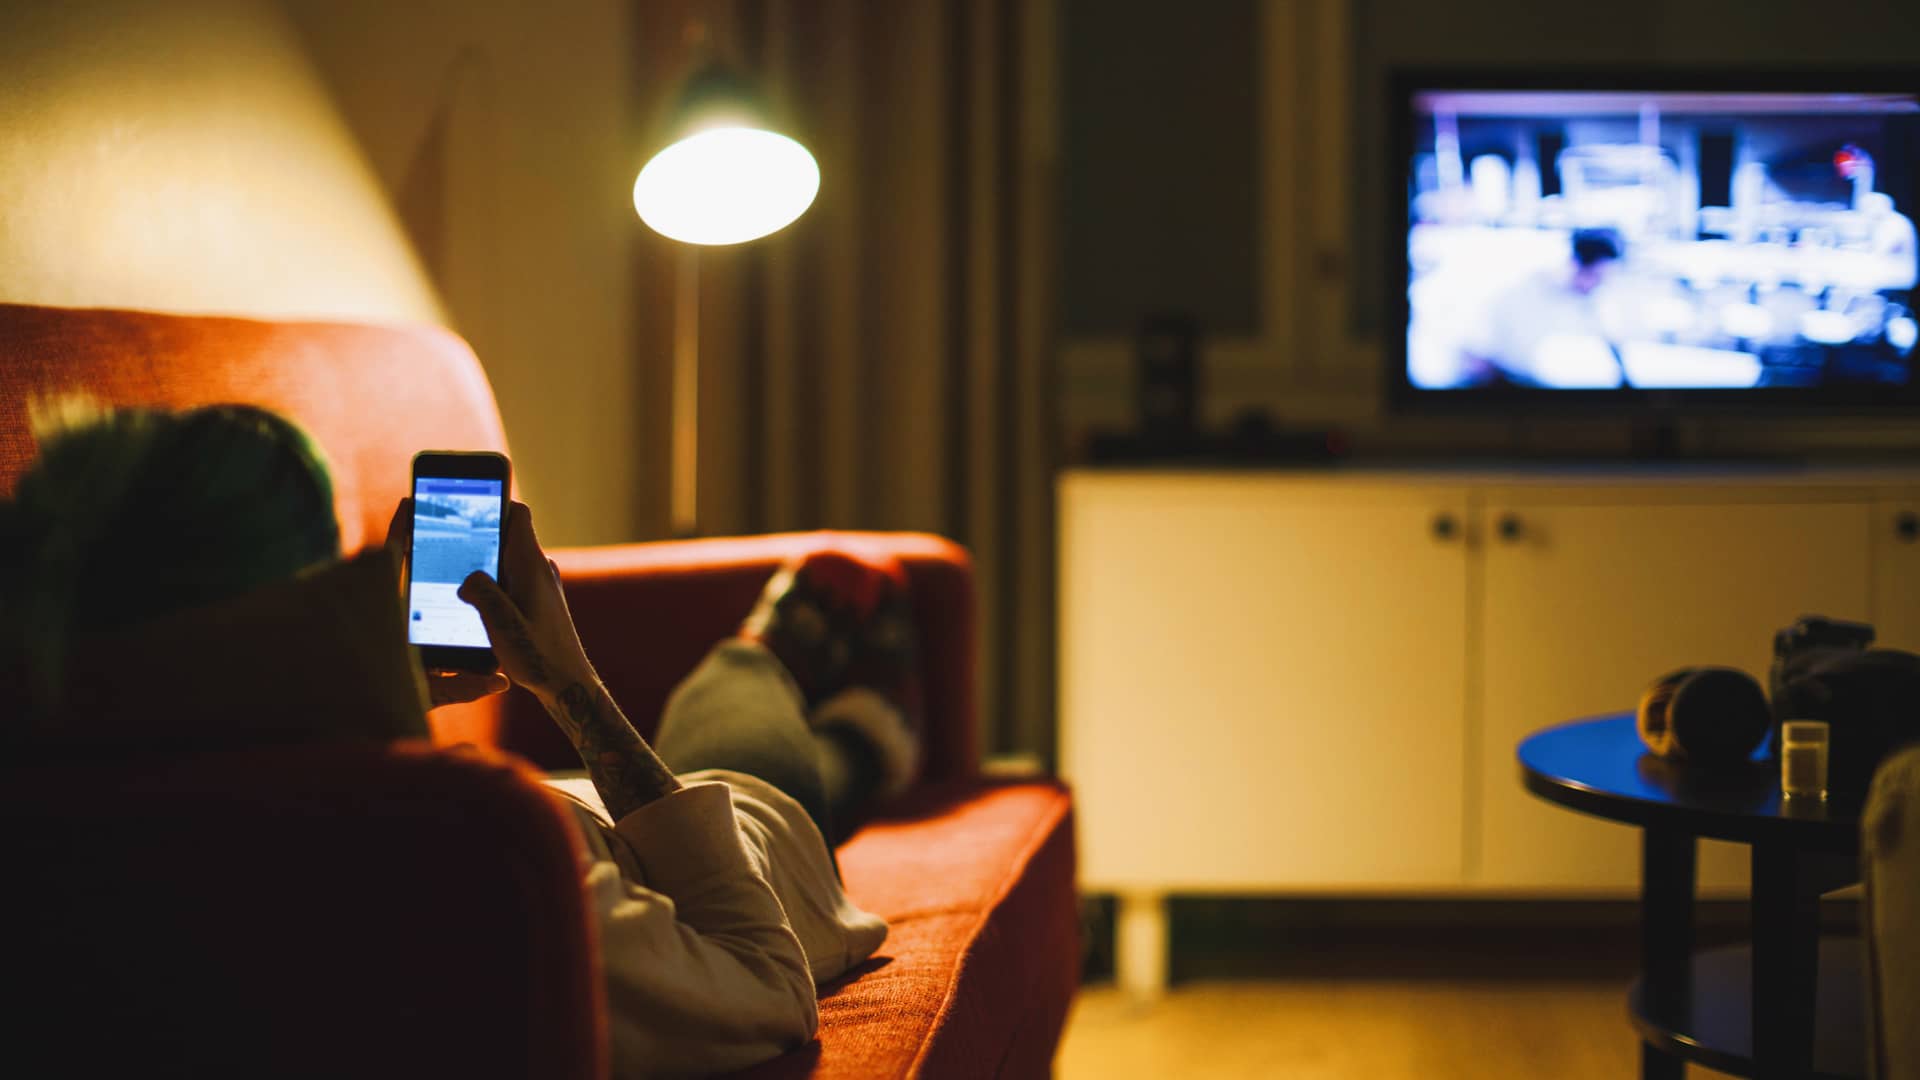 Persona tumbada en sofá navega por redes sociales en su móvil mientras ve la televisión, disfrutando de una tarifa de móvil y tv de orange